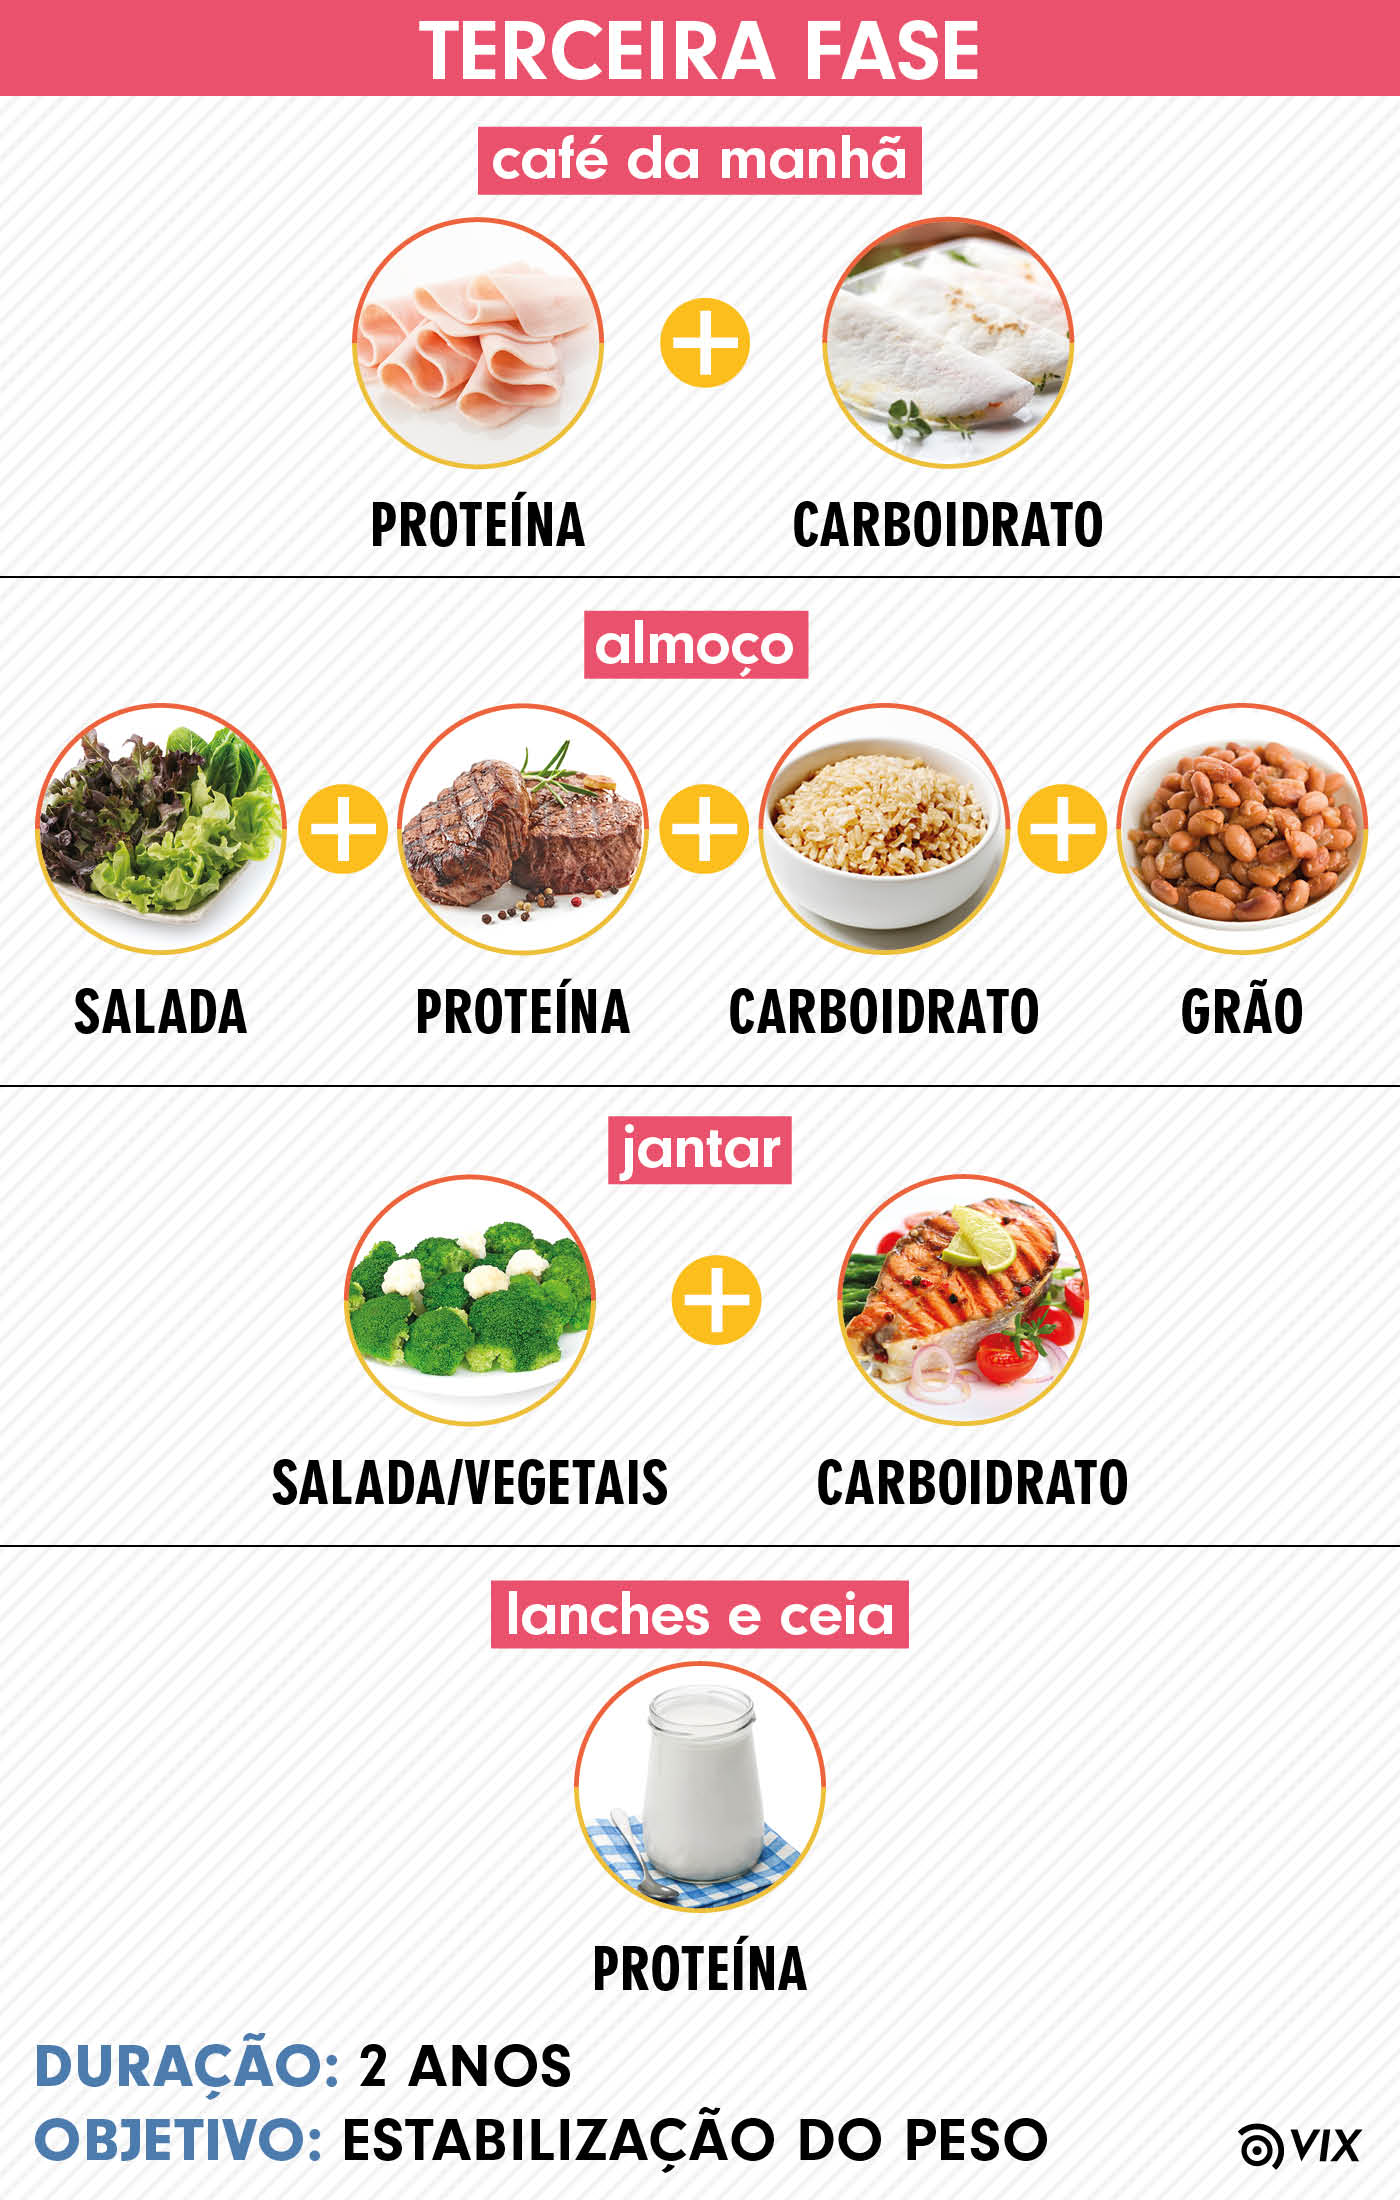 Cardápio completo da nova dieta da proteína: entenda cada uma das fases |  Tasaudavel Alimentação | Tasaudavel - dieta mediterrânea cardápio